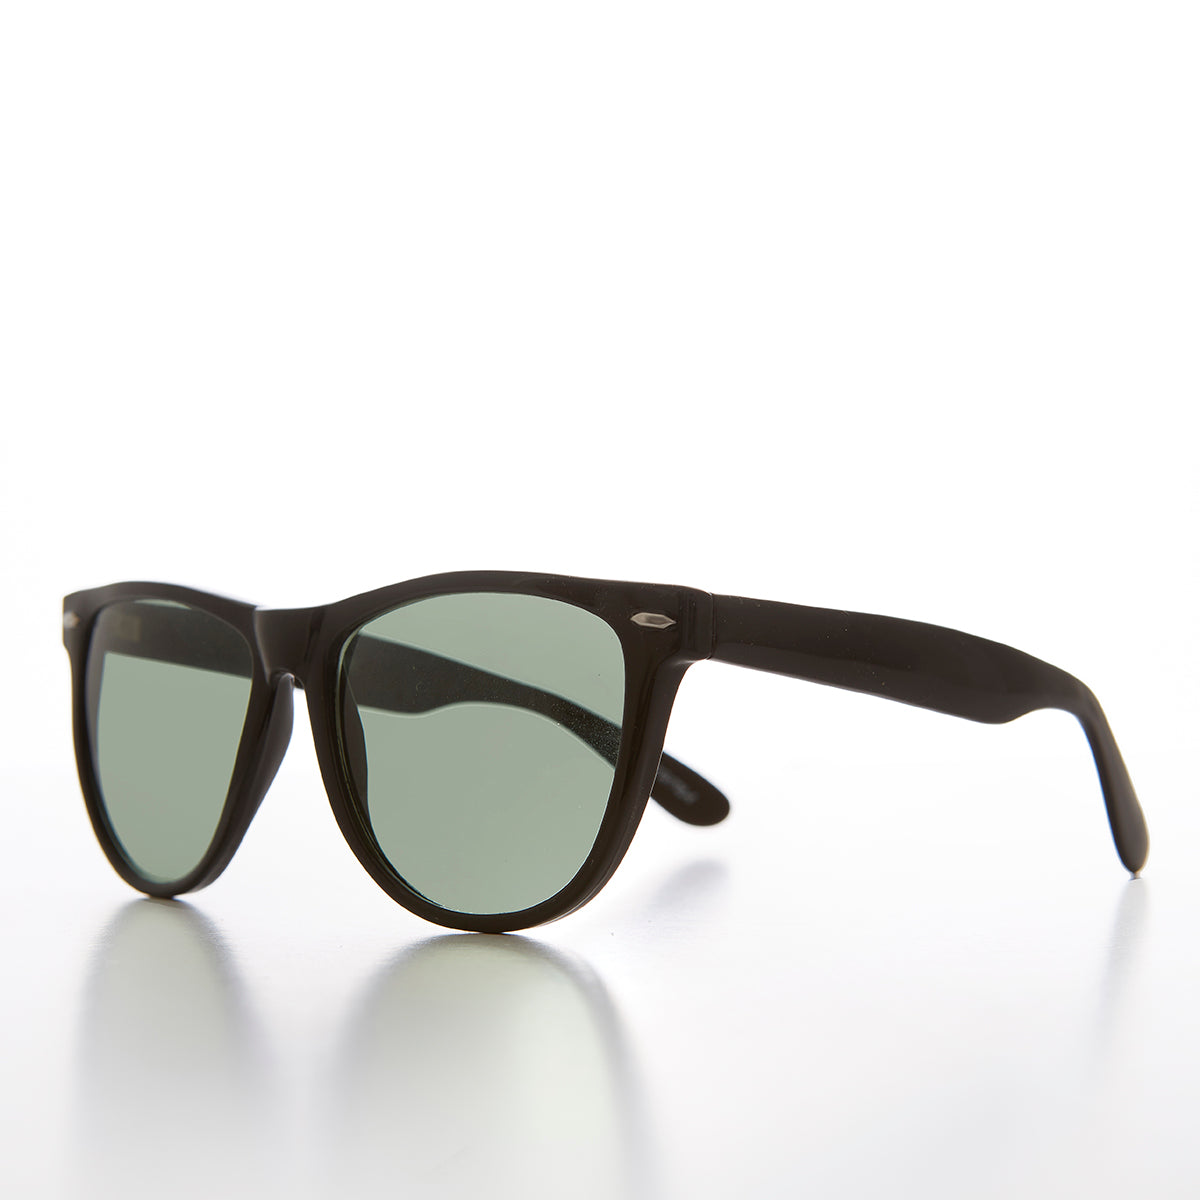 Iconic Square Unisex Vintage Sunglasses